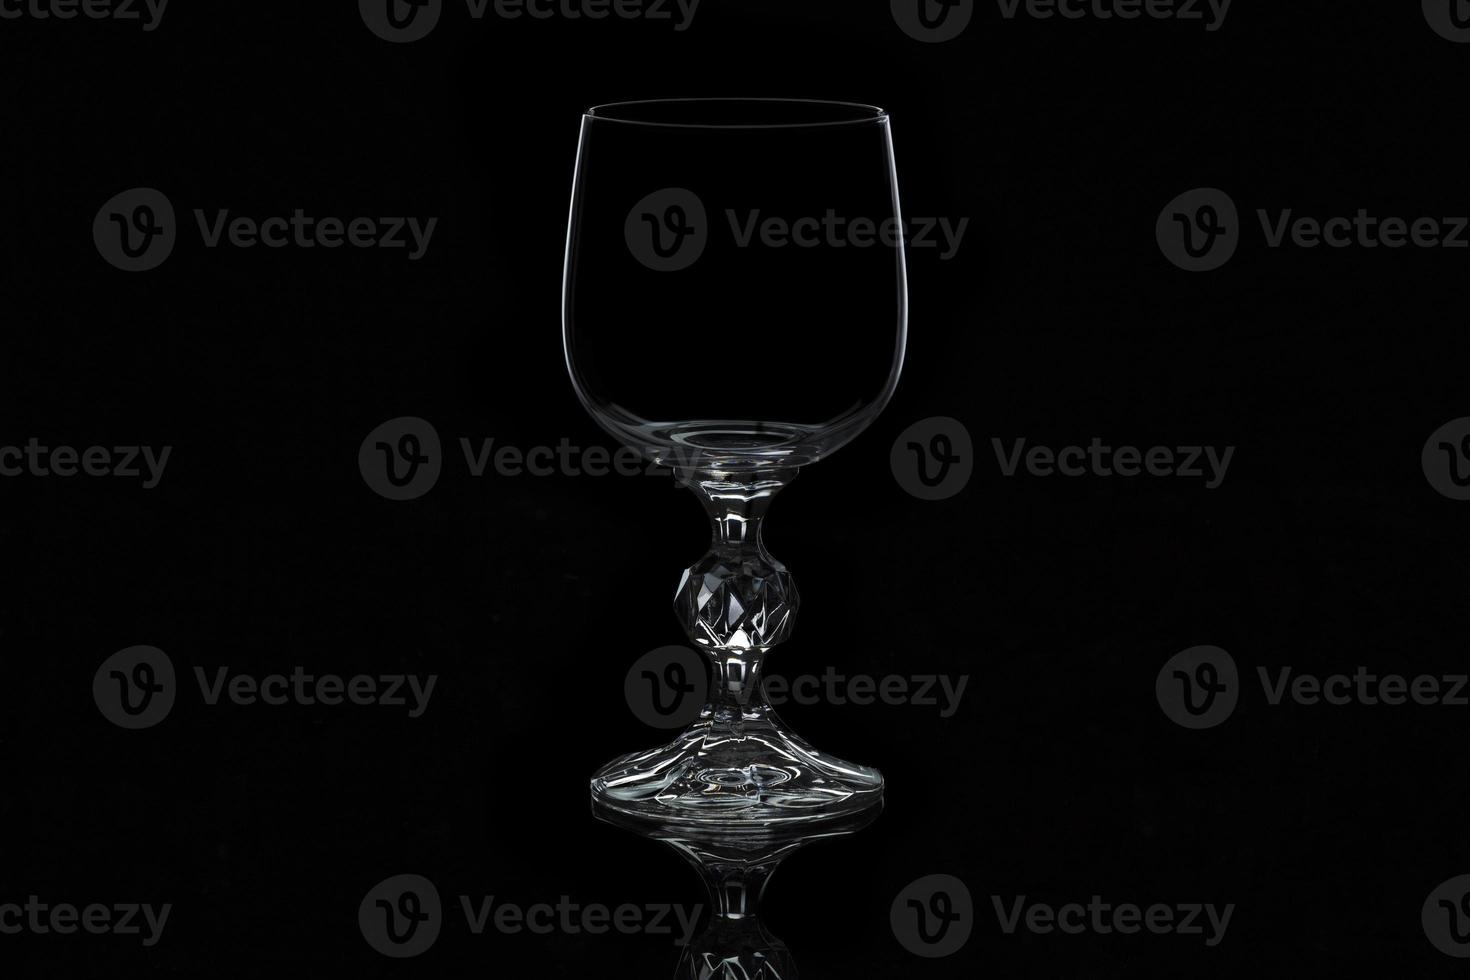 Verre à vin en verre isolé sur fond noir photo